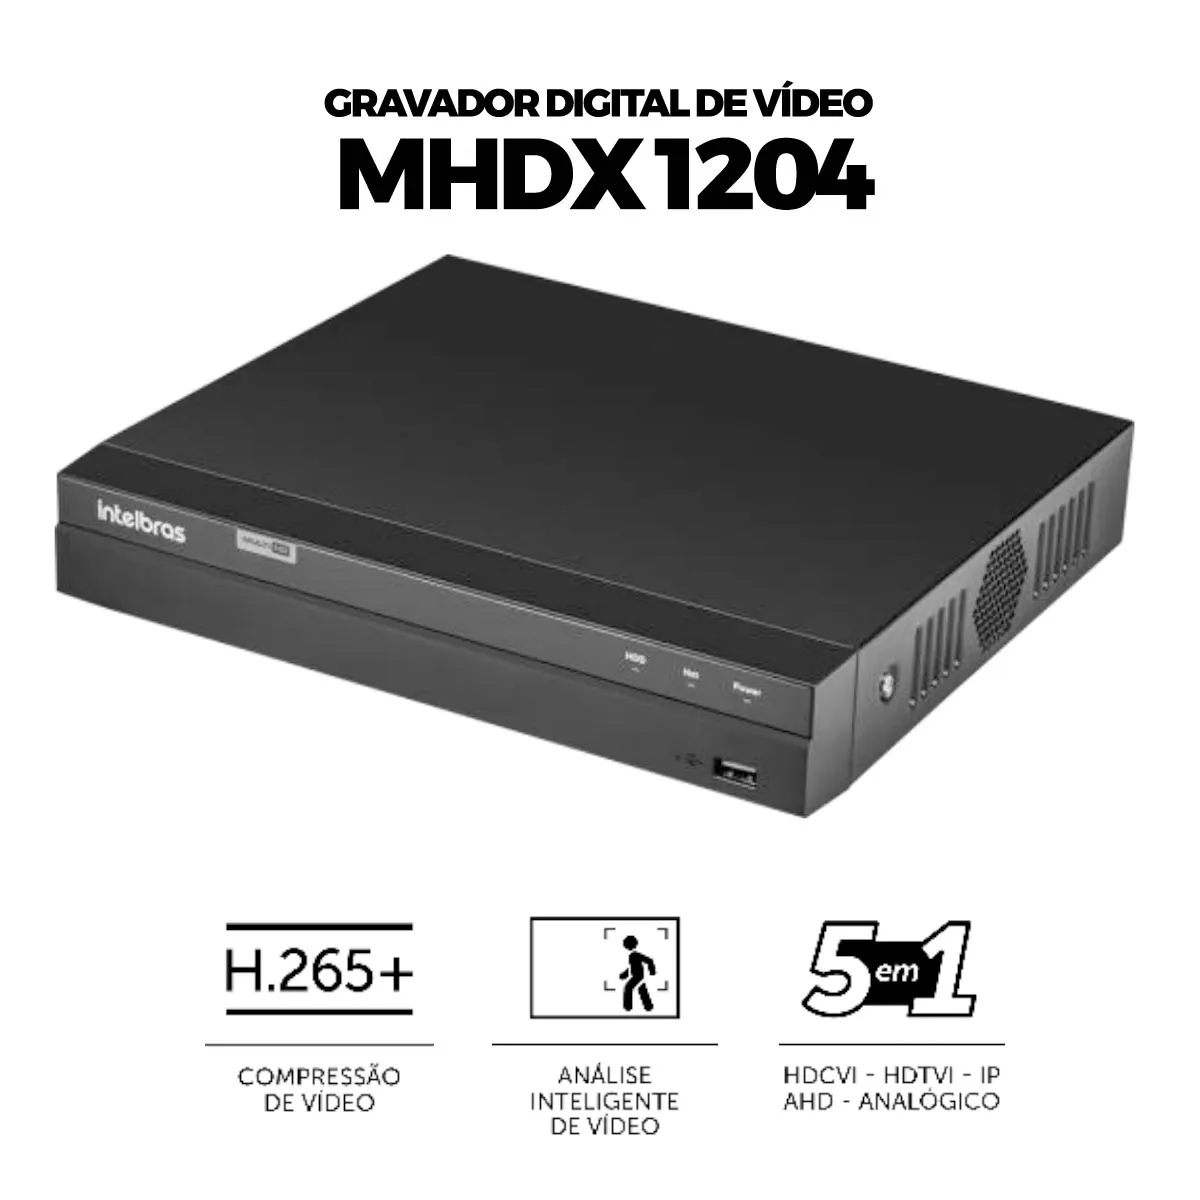 DVR Intelbras MHDX 1204 gravador digital de vídeo Multi Hd 4 canais 5 em 1 Com Detecção Inteligente de Movimento